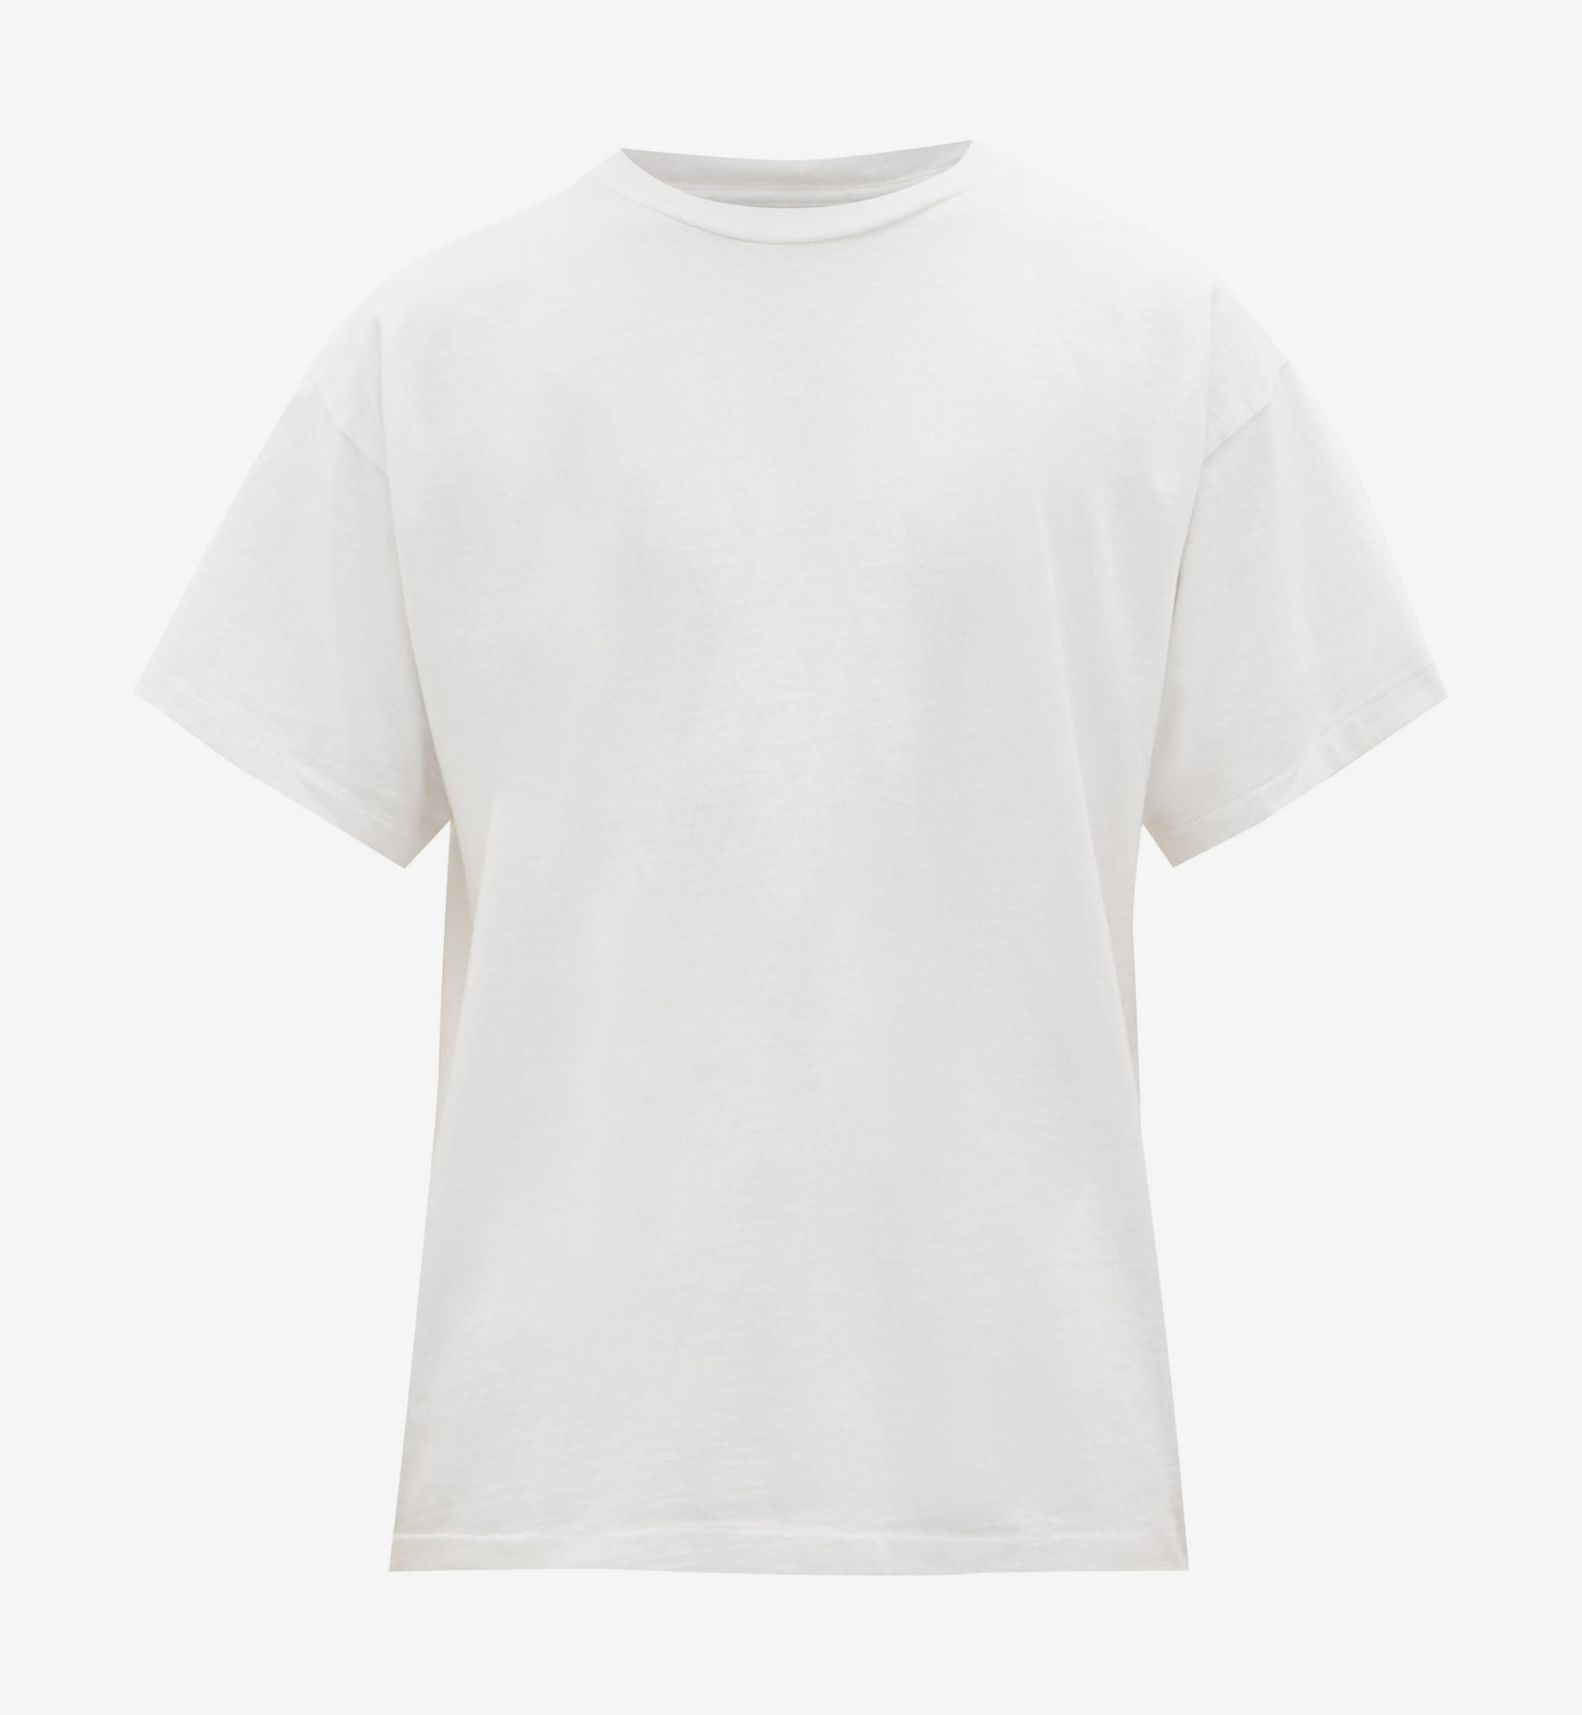 luxury white t shirt